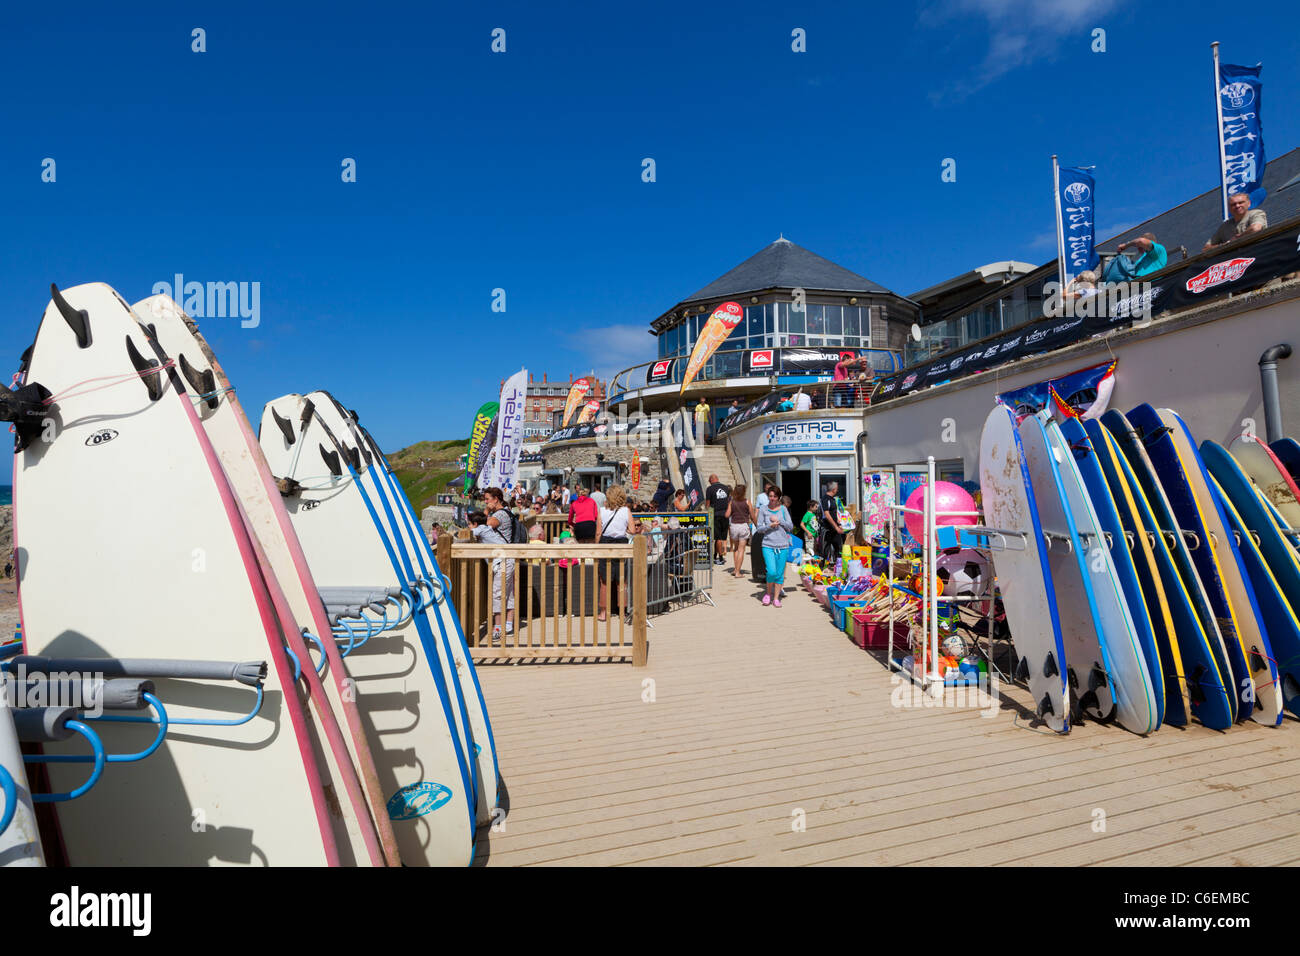 Surf-Bretter und Surfequipment zu verkaufen oder mieten Fustral Strand Newquay England UK GB EU Europa Stockfoto